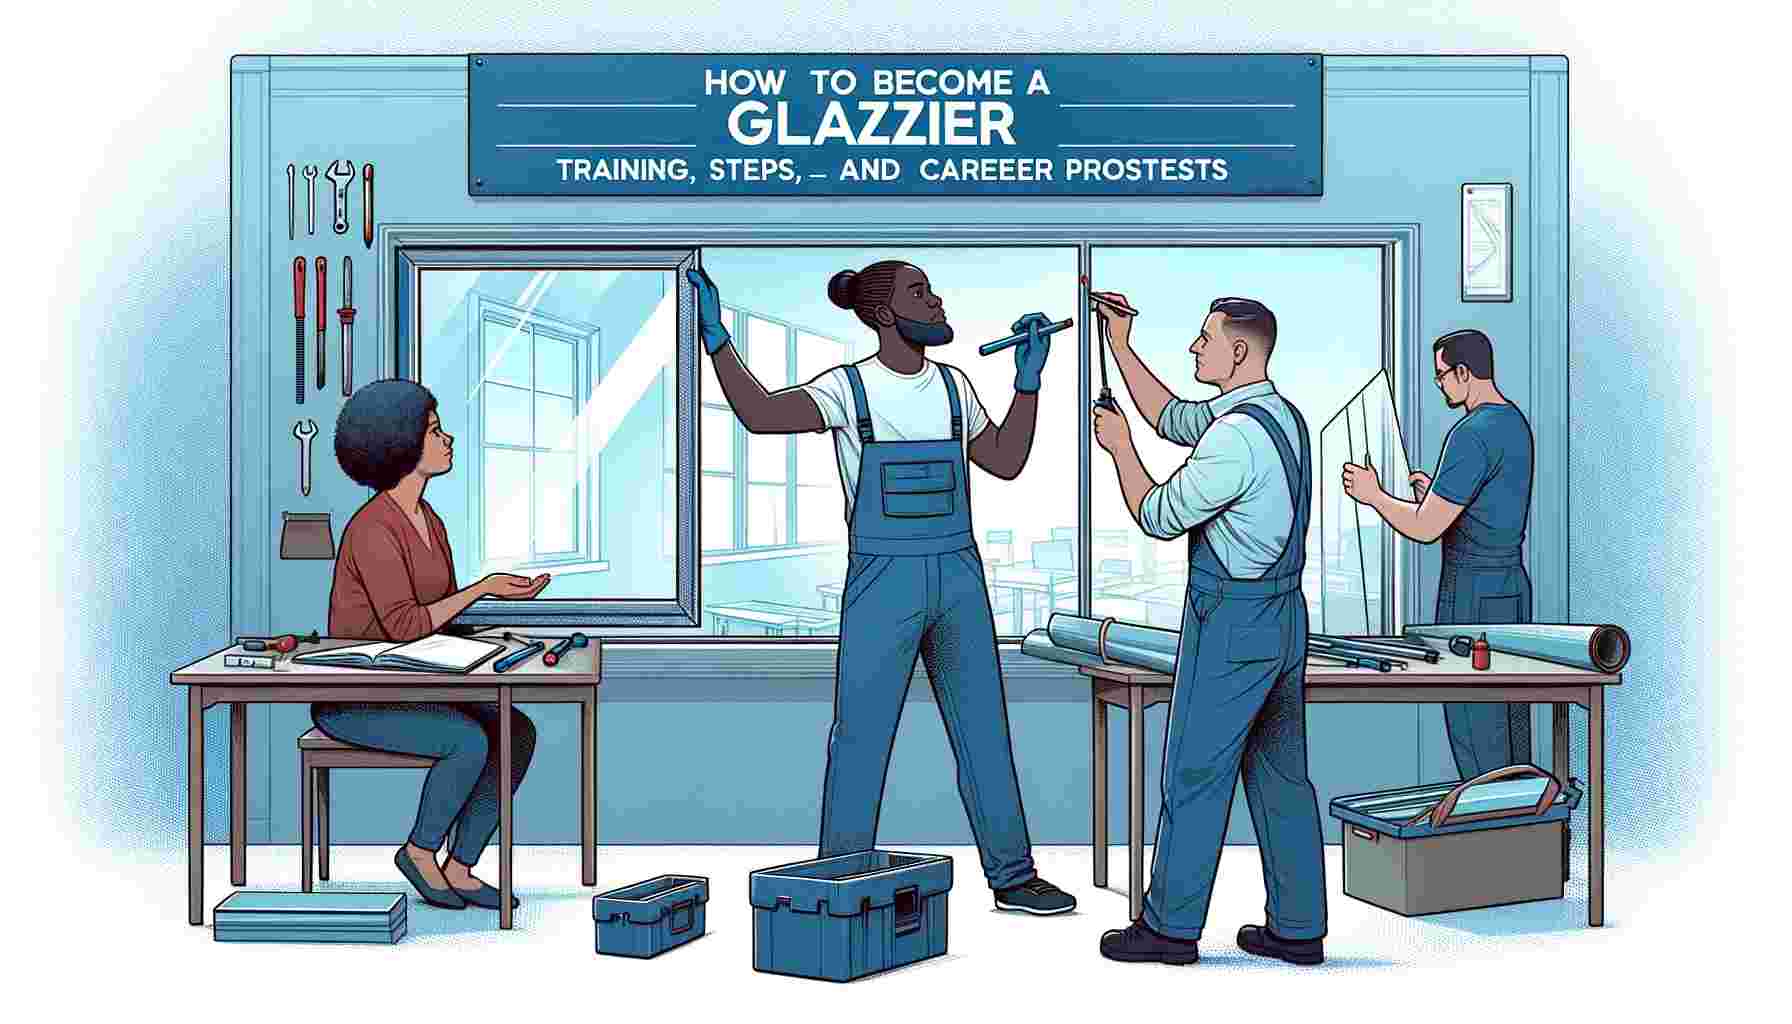 Comment devenir vitrier : formation, étapes et perspectives de carrière dans le secteur de la vitrerie